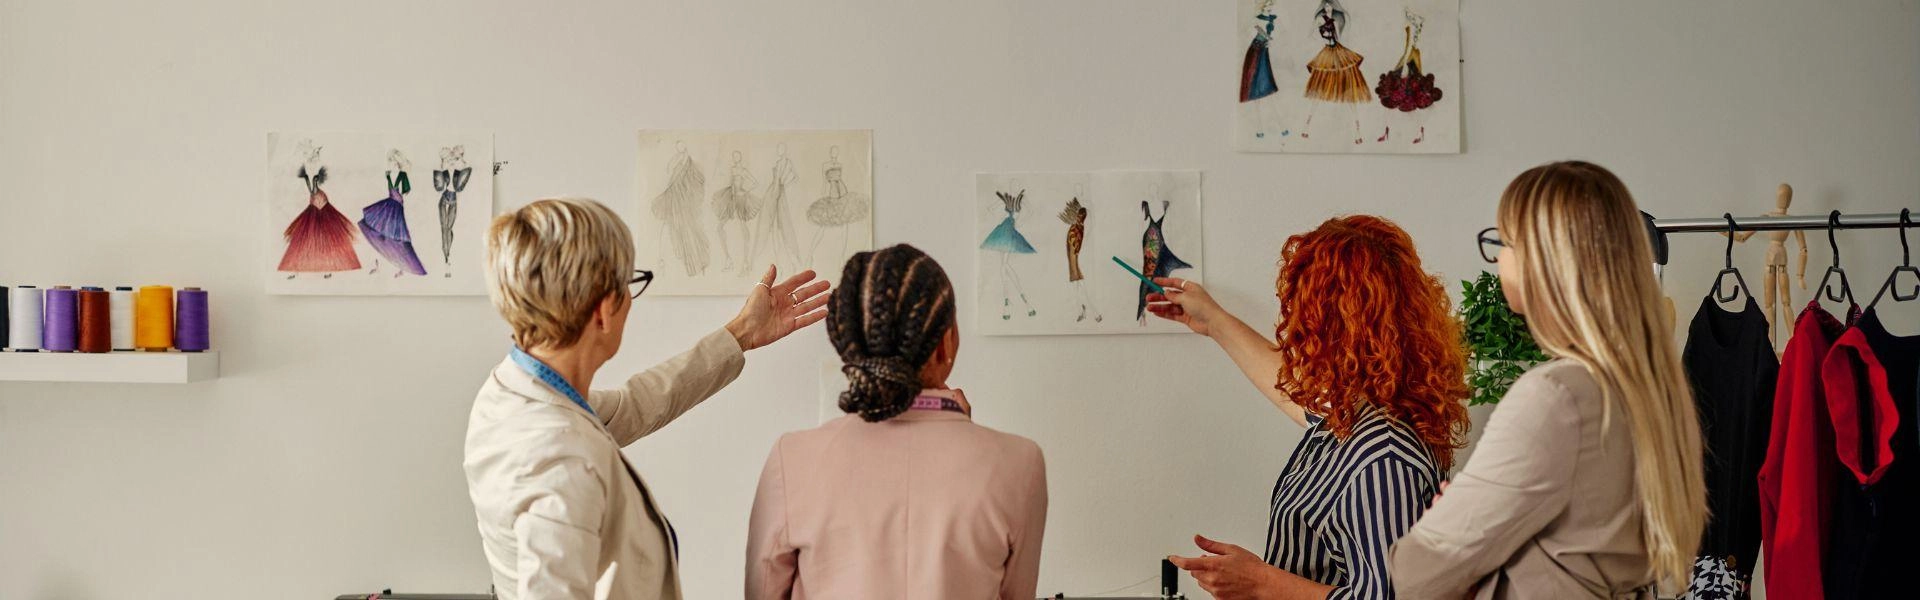 Designers da indústria da moda apontando para esboços pendurados na parede e conversando sobre planos de projeto.